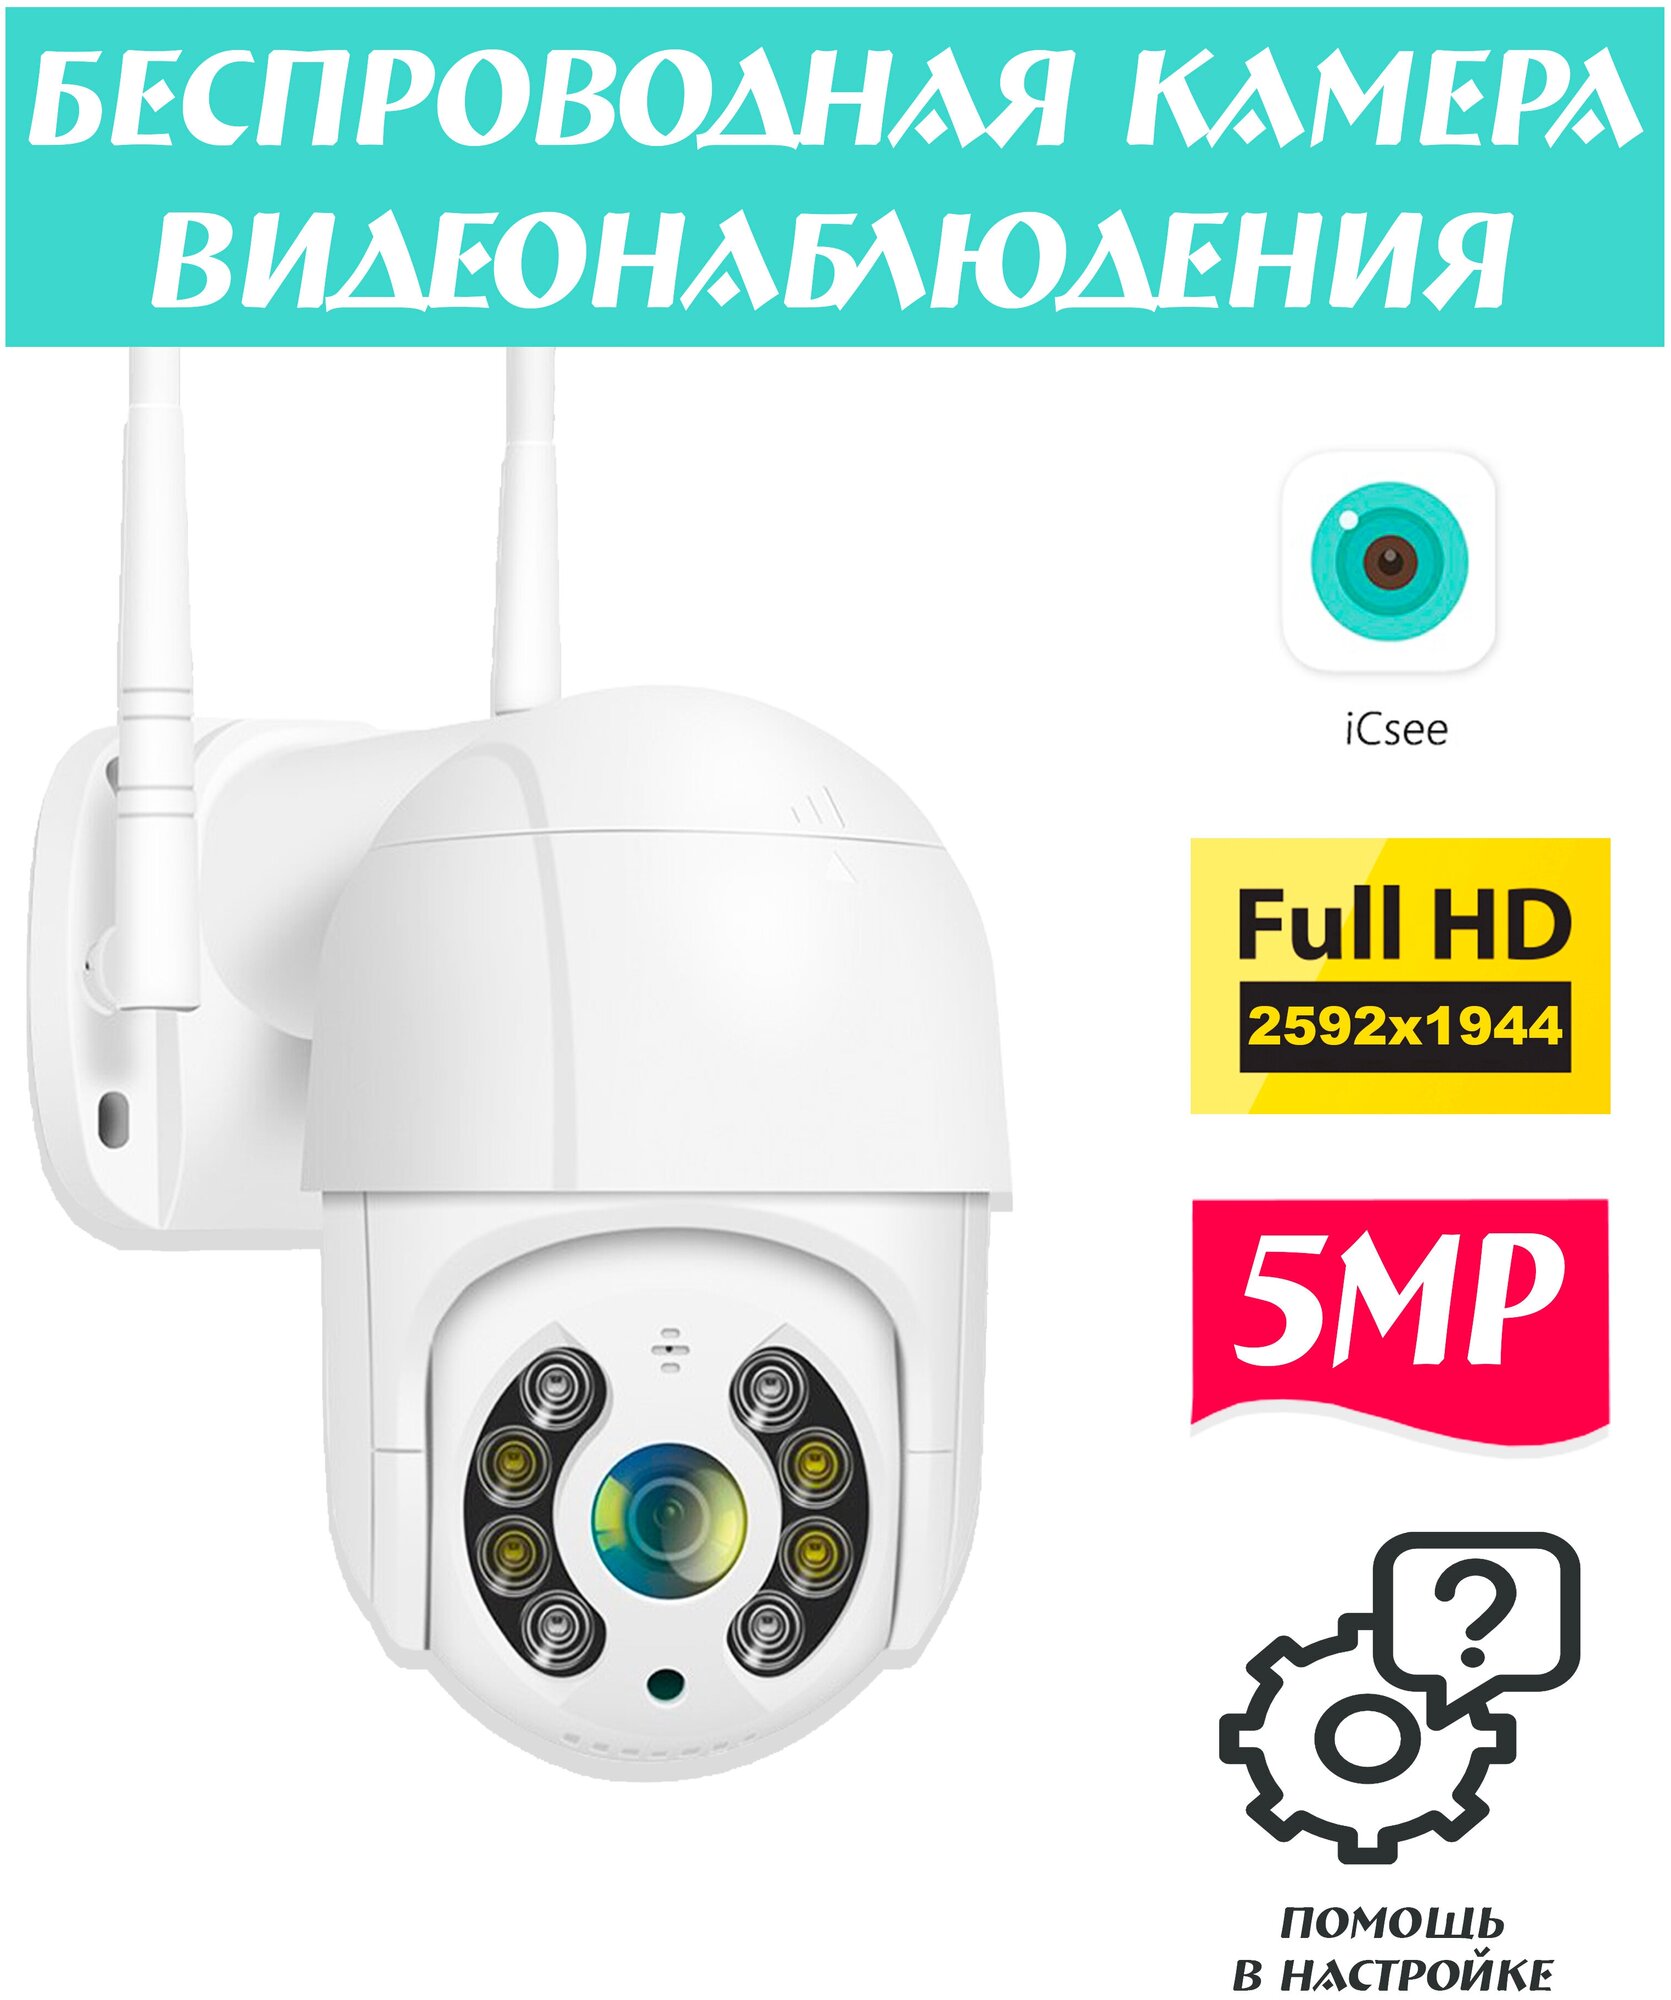 Камера видеонаблюдения wifi 5MP Беспроводная Уличная Для дома IP камера Wi-fi Поворотная Скрытая мини камера Обзор 360